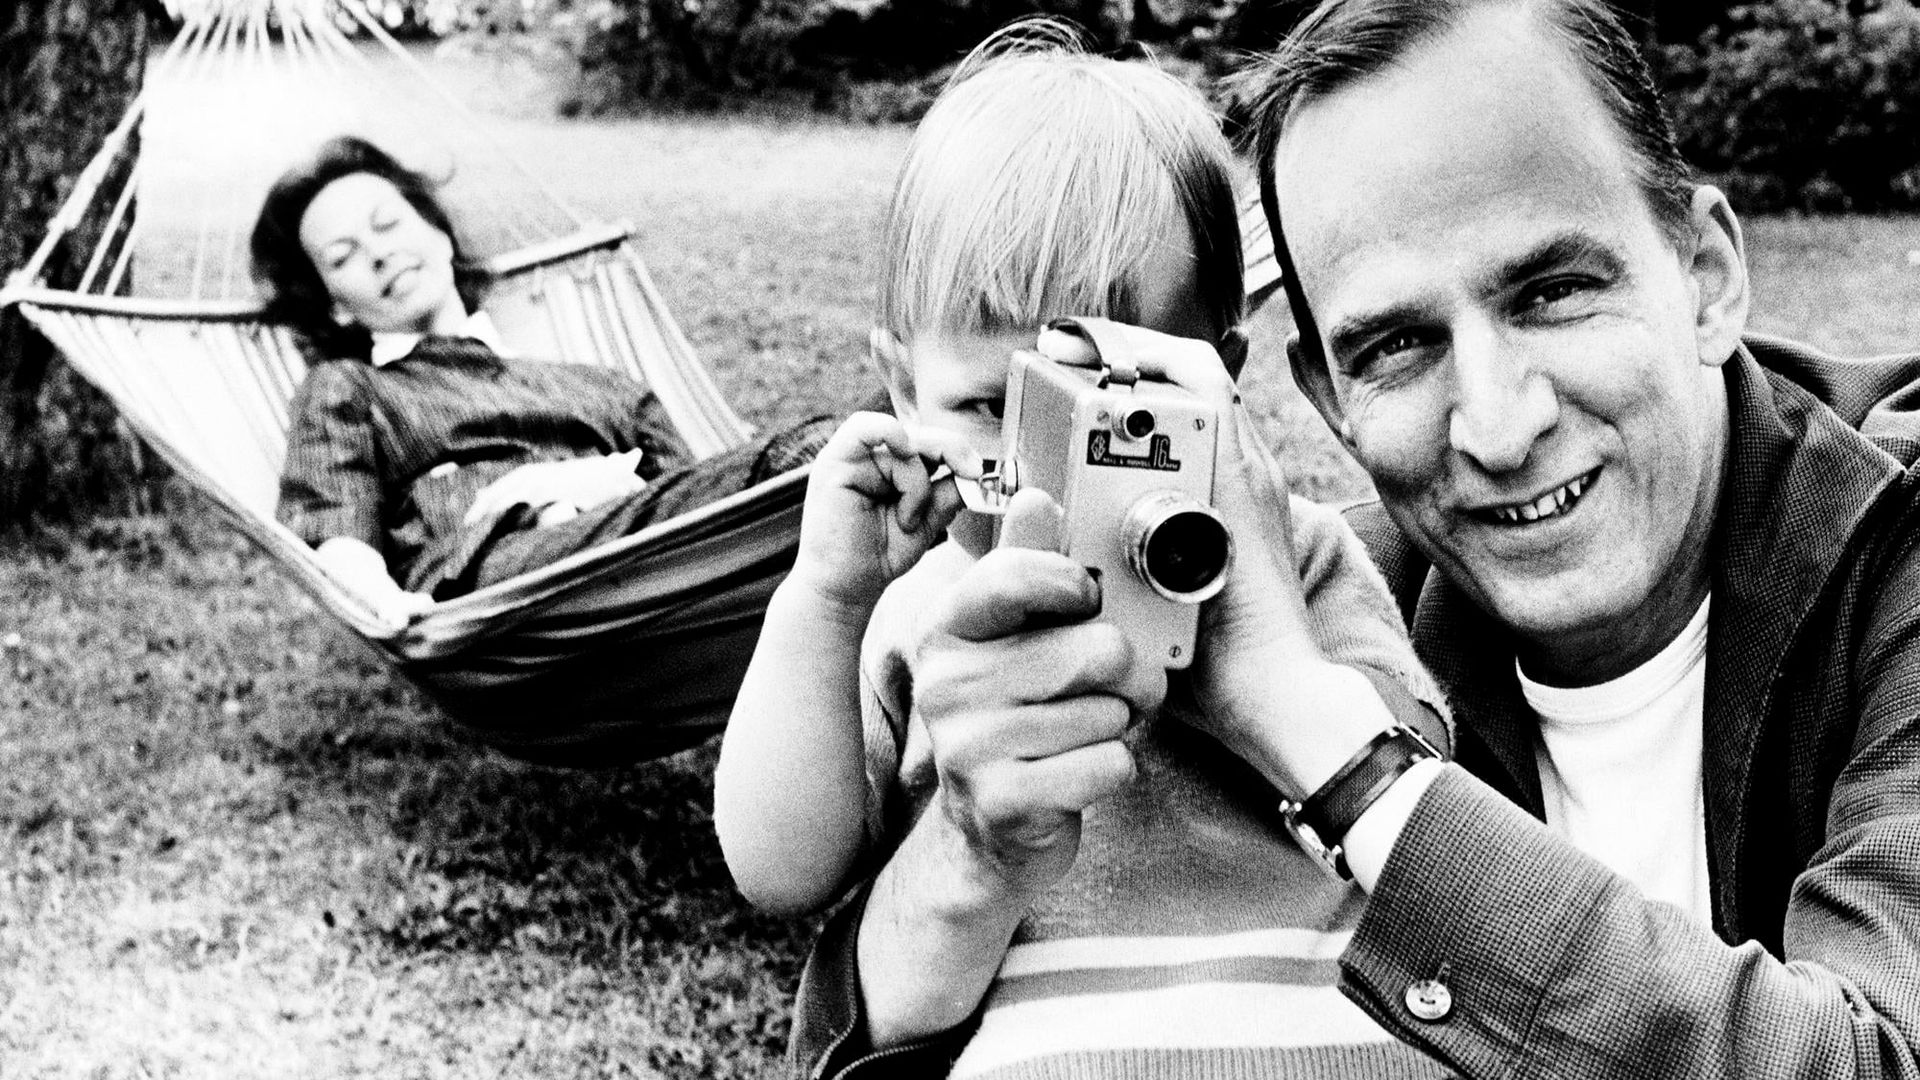 Searching for Ingmar Bergman background